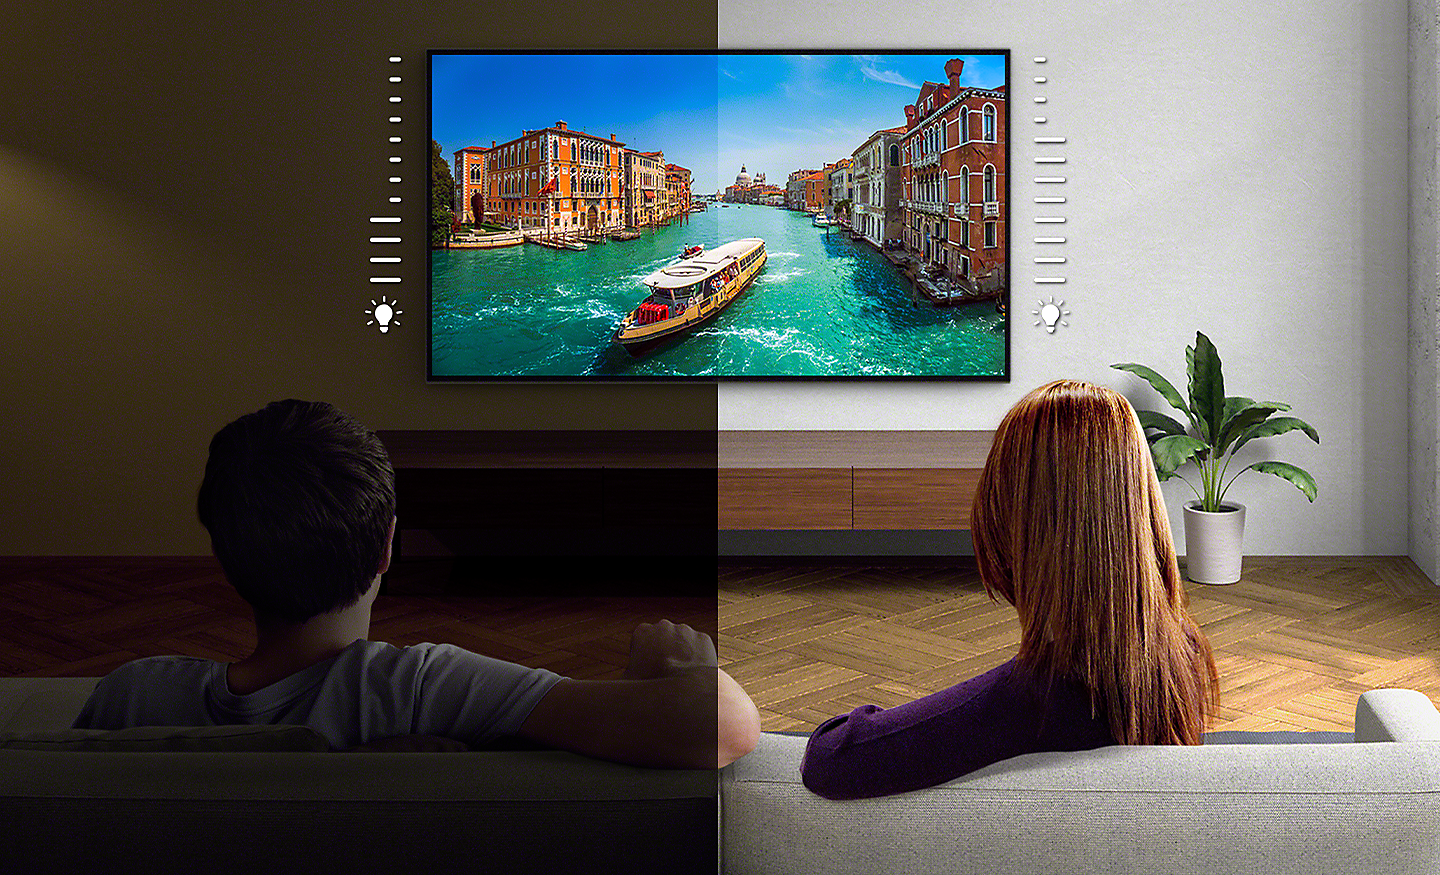 Jaettu kuva pariskunnasta katselemassa TV:tä – vasen kuva on tummempi kuin oikea